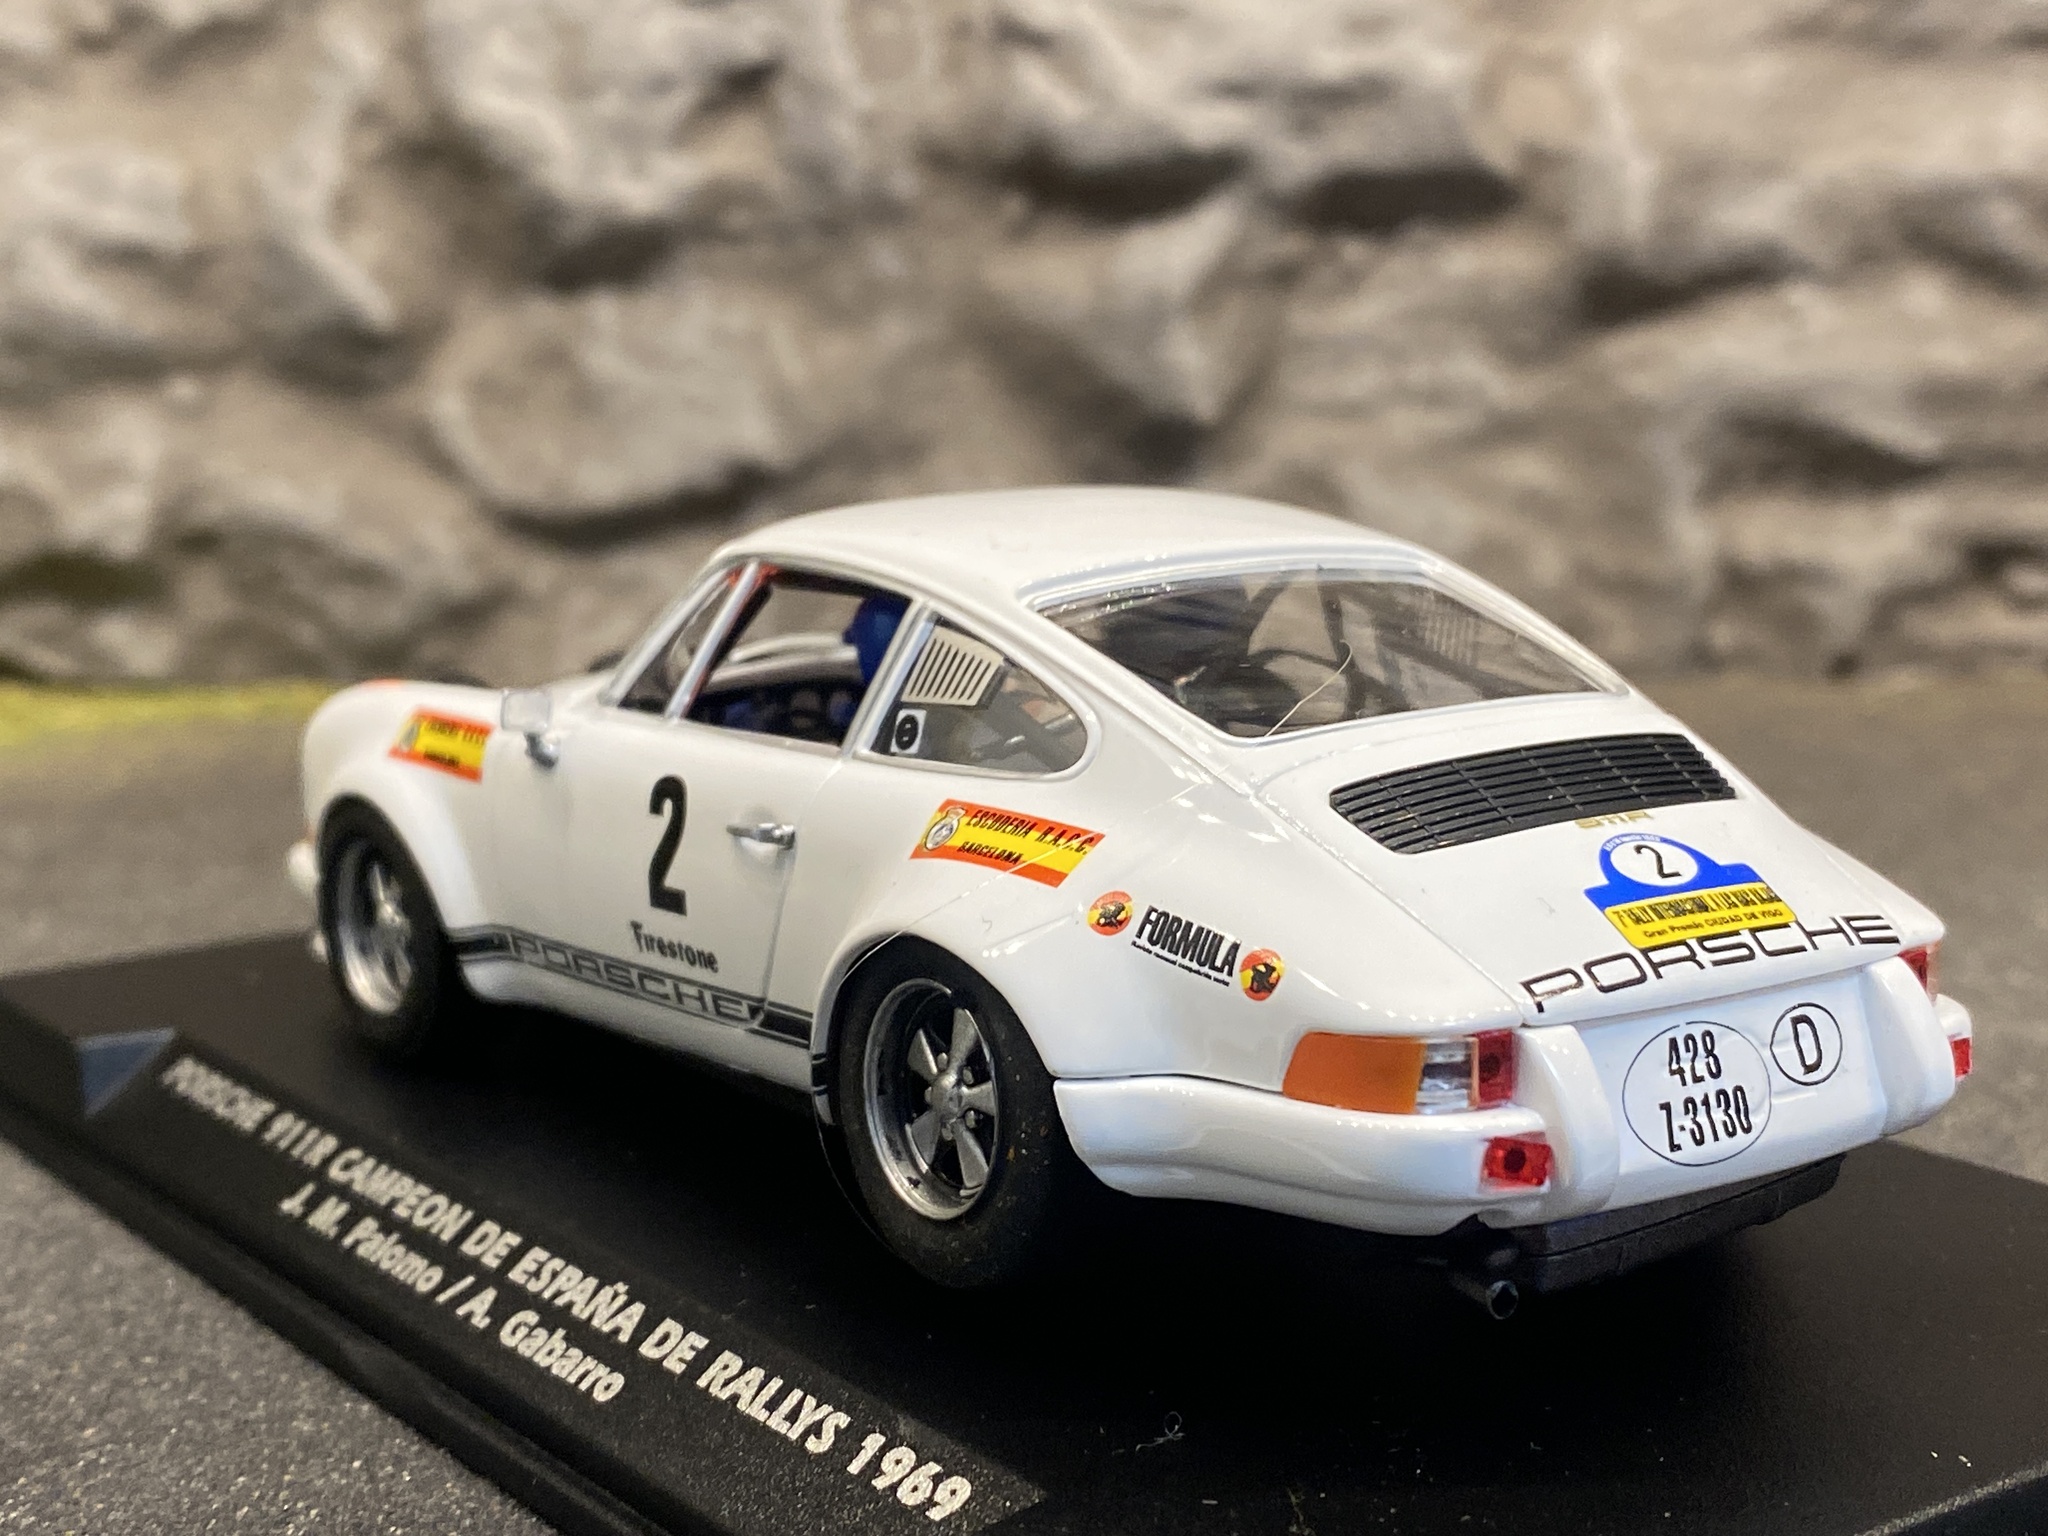 Skala 1/32 Analog FLY Bil till Bilbana: Porsche 911R #2 Rally Lugo 1969 Lim Ed. 350ex